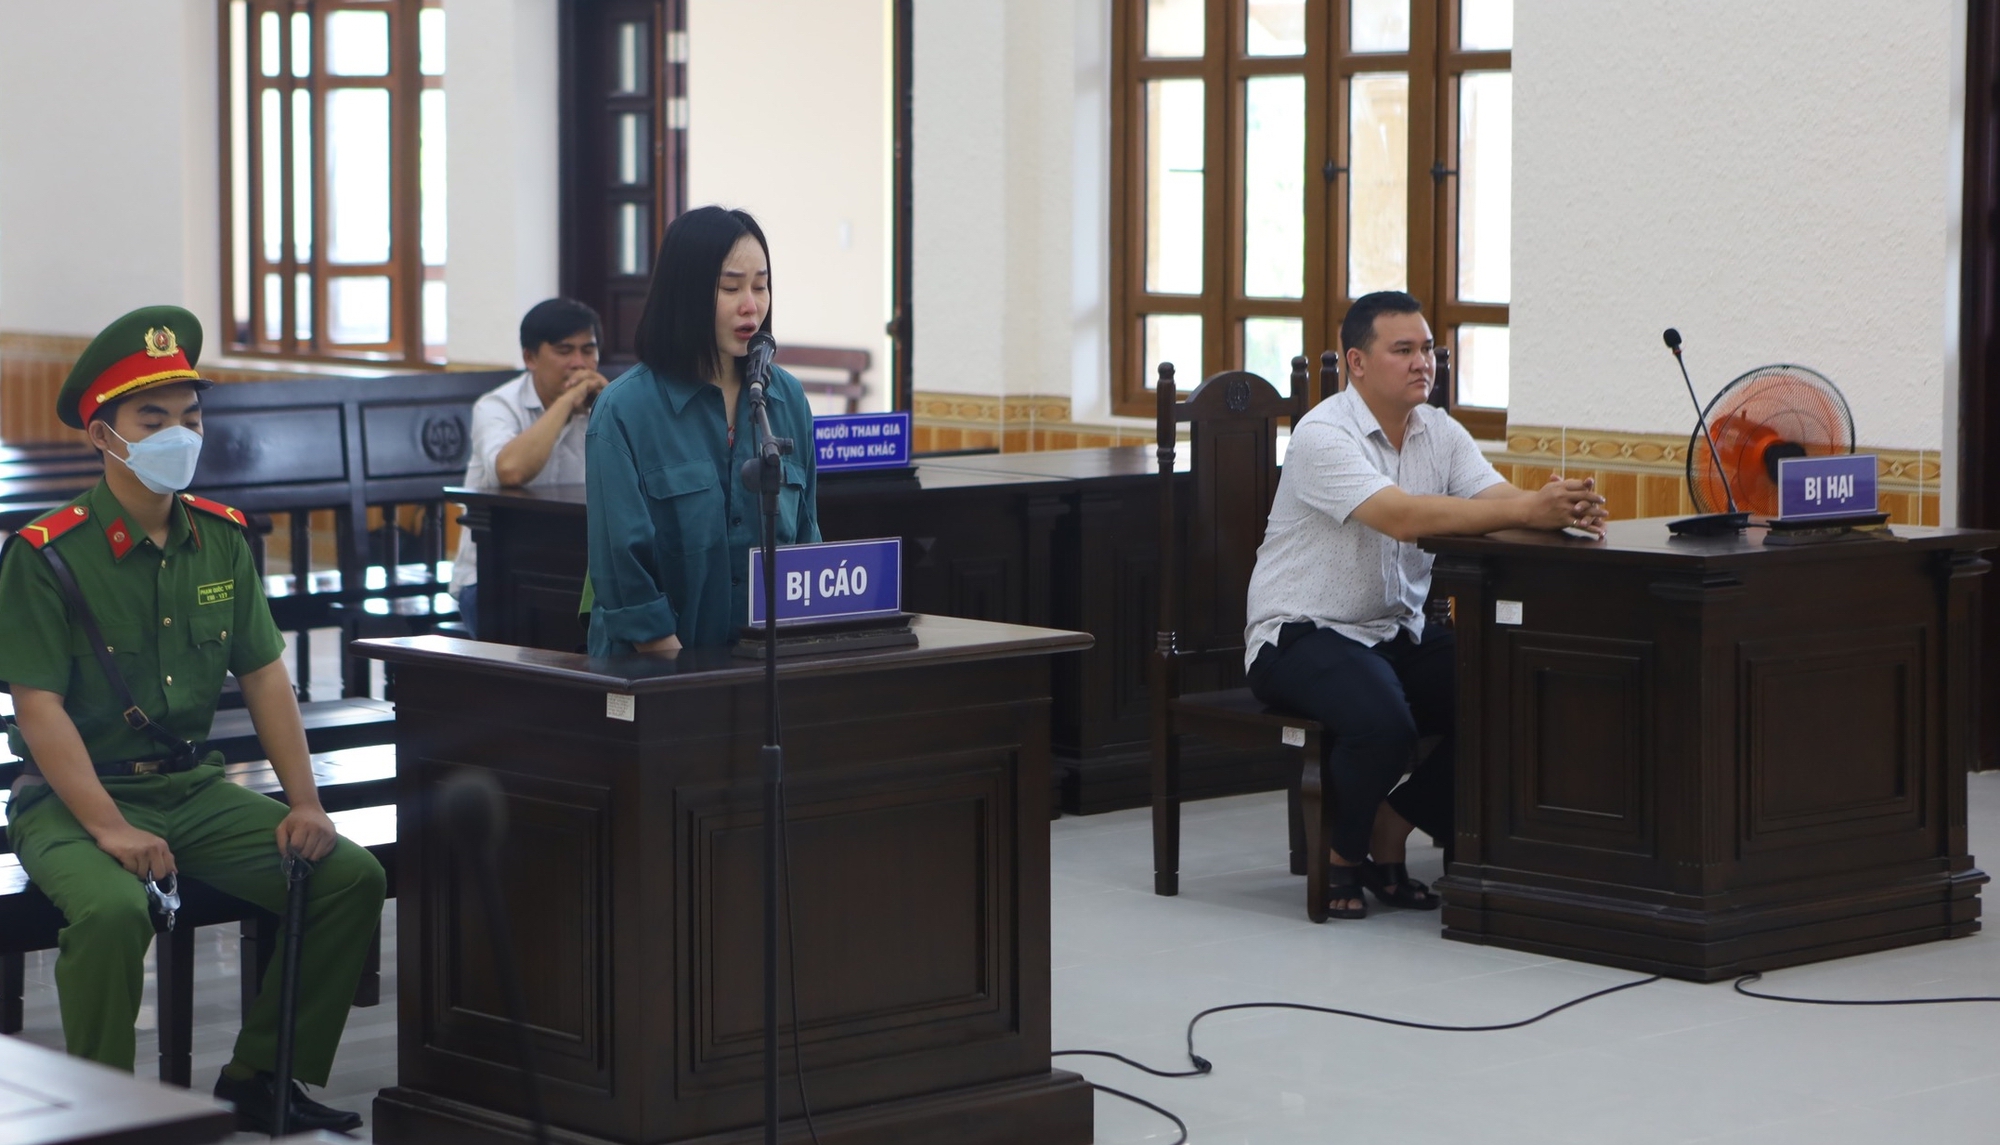 Bị tuyên án 11 năm tù Tina Dương bật khóc nức nở trước tòa - Ảnh 1.